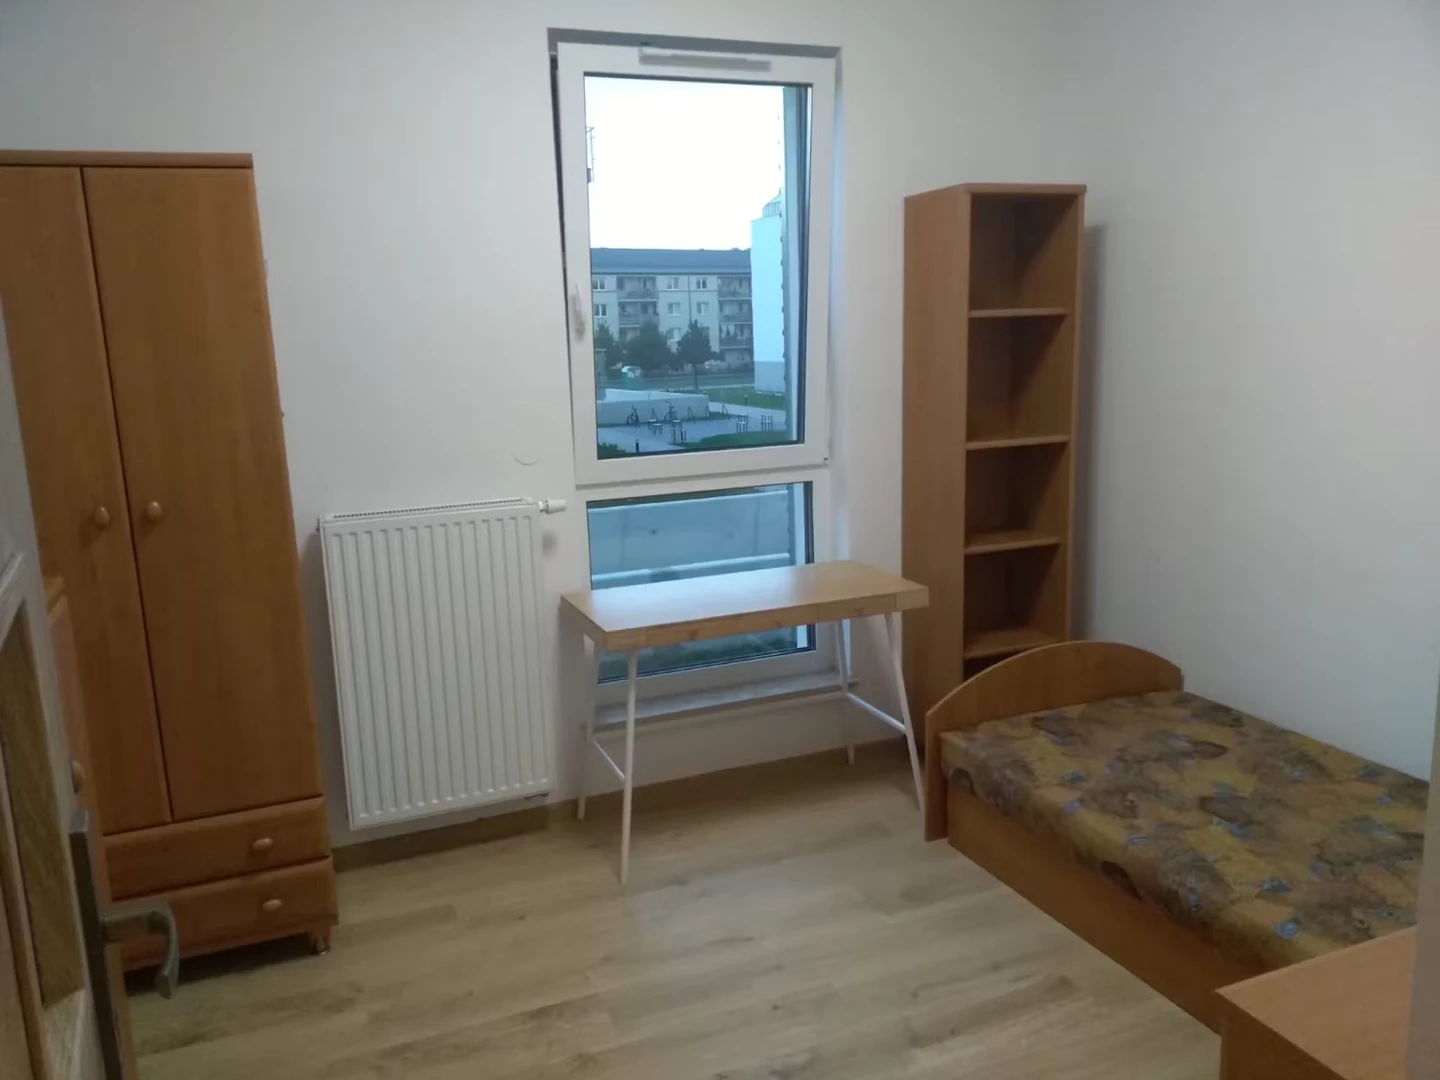 Alquiler de habitación en piso compartido en Poznań